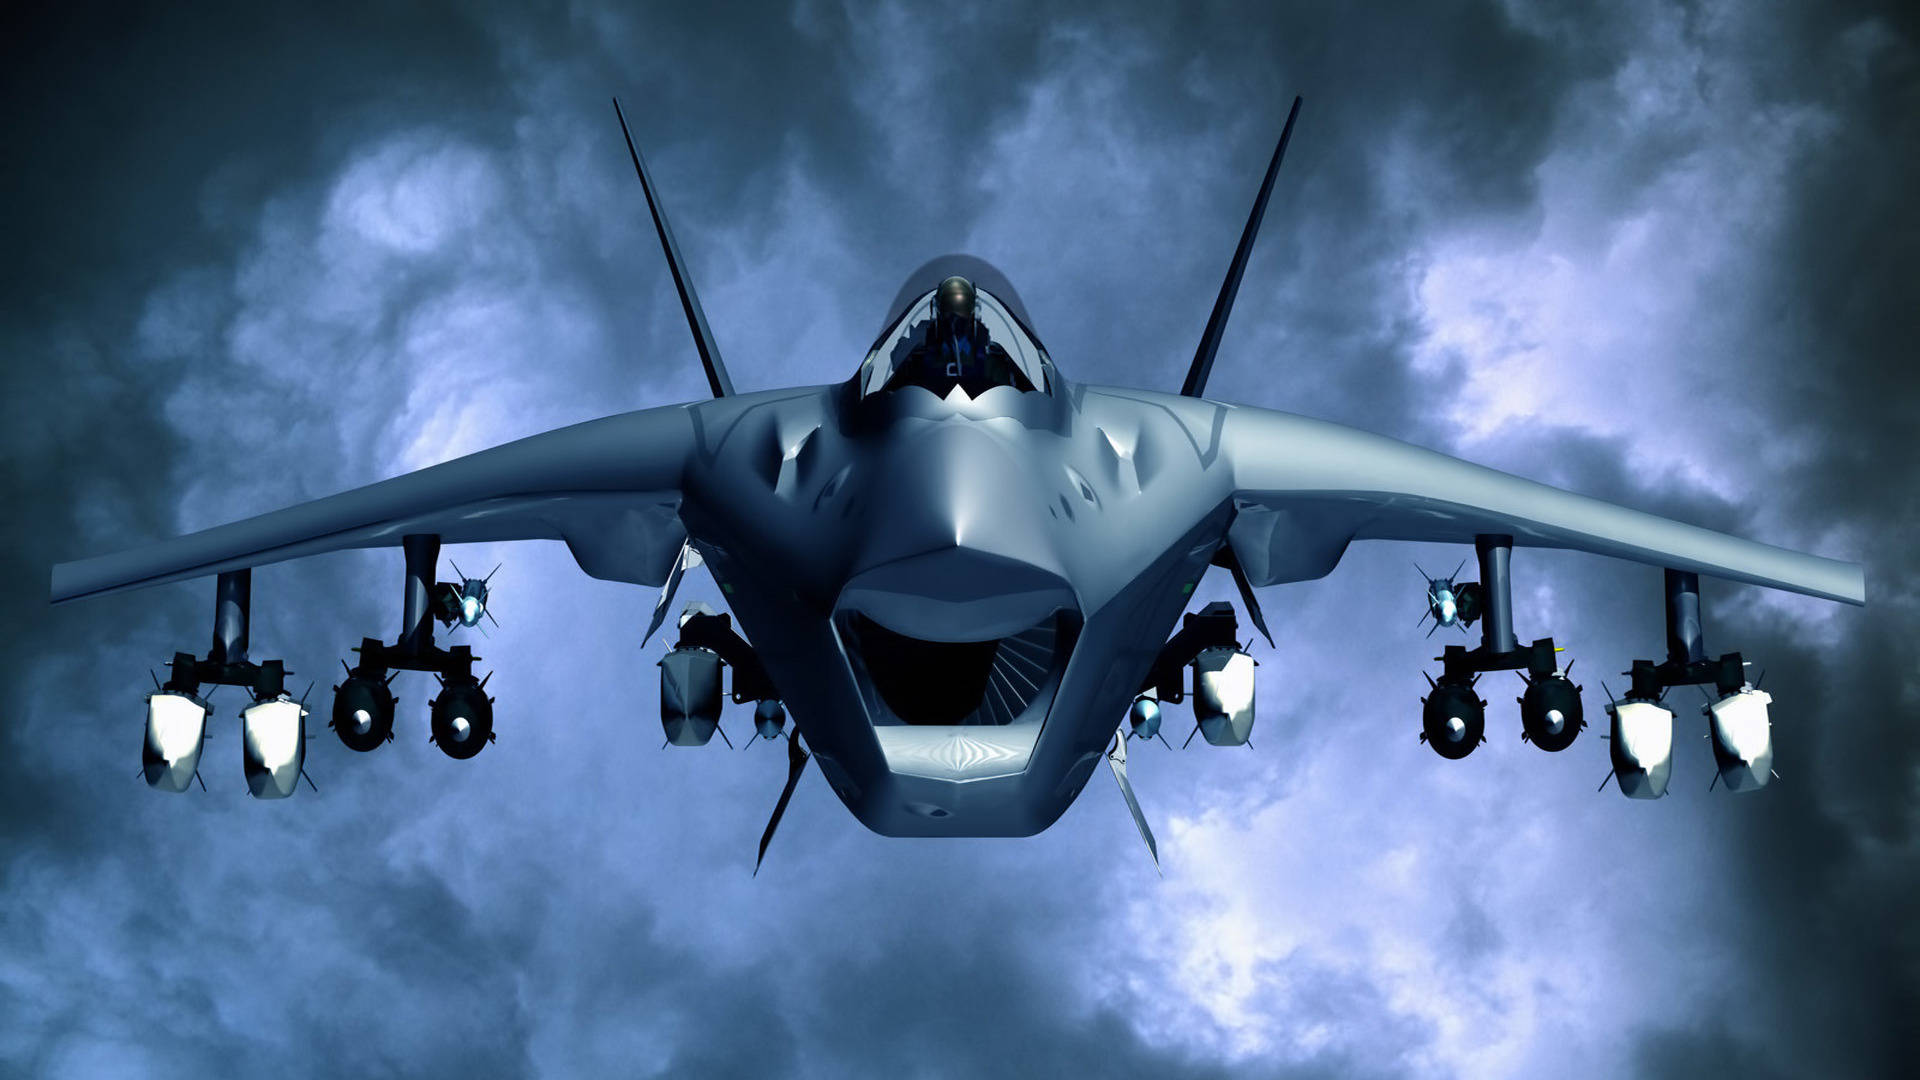 Dieunited States Air Force Führt Mit Ihrer Militärischen Jet-superkraft Den Weg An. Wallpaper